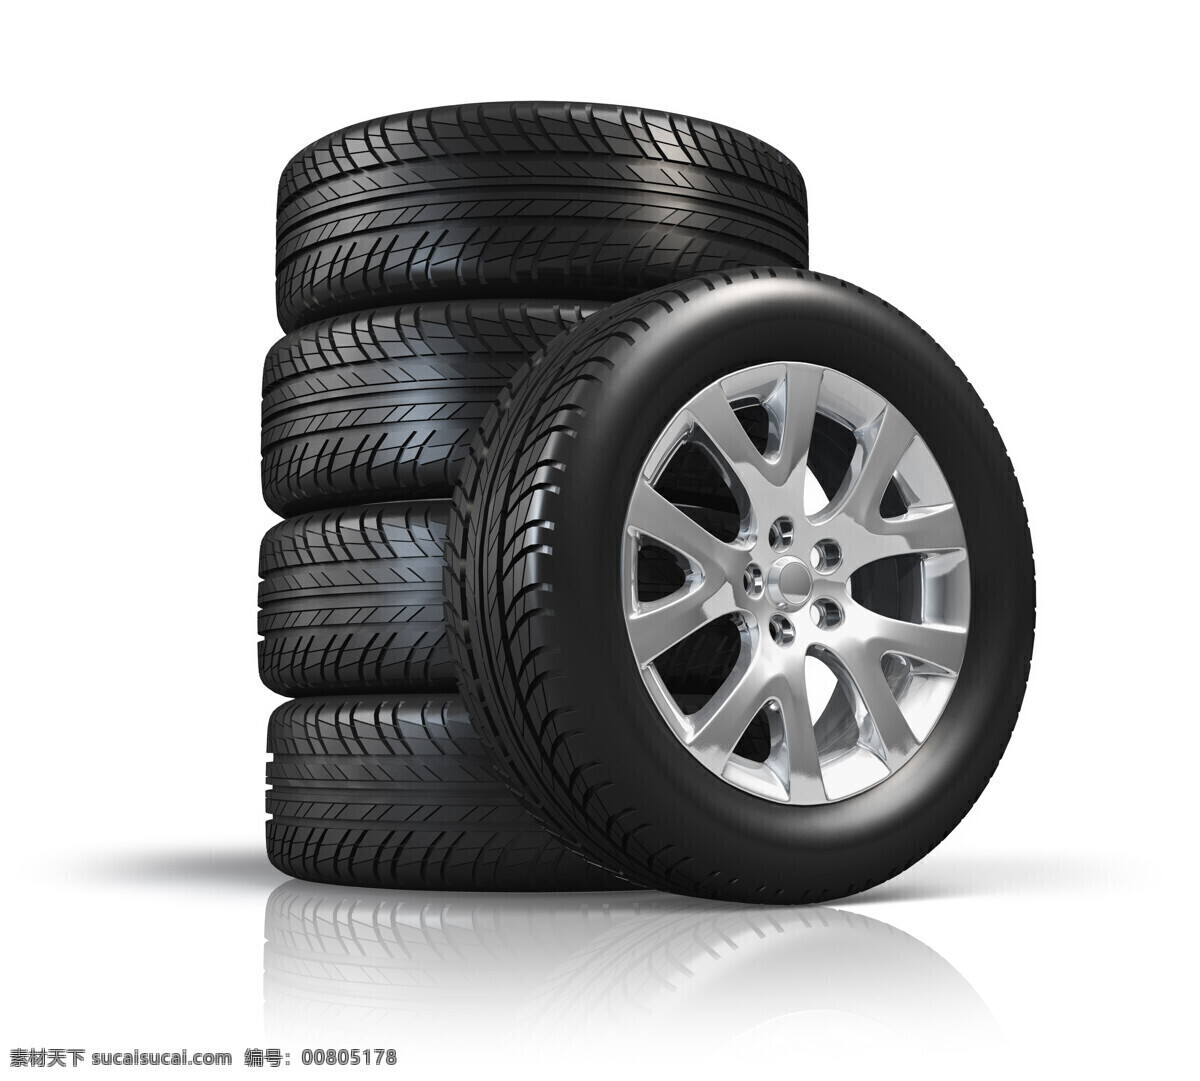 3d 轮胎 轮胎素材 轮胎摄影 轮胎广告 汽车轮胎 汽车维修 汽车图片 现代科技